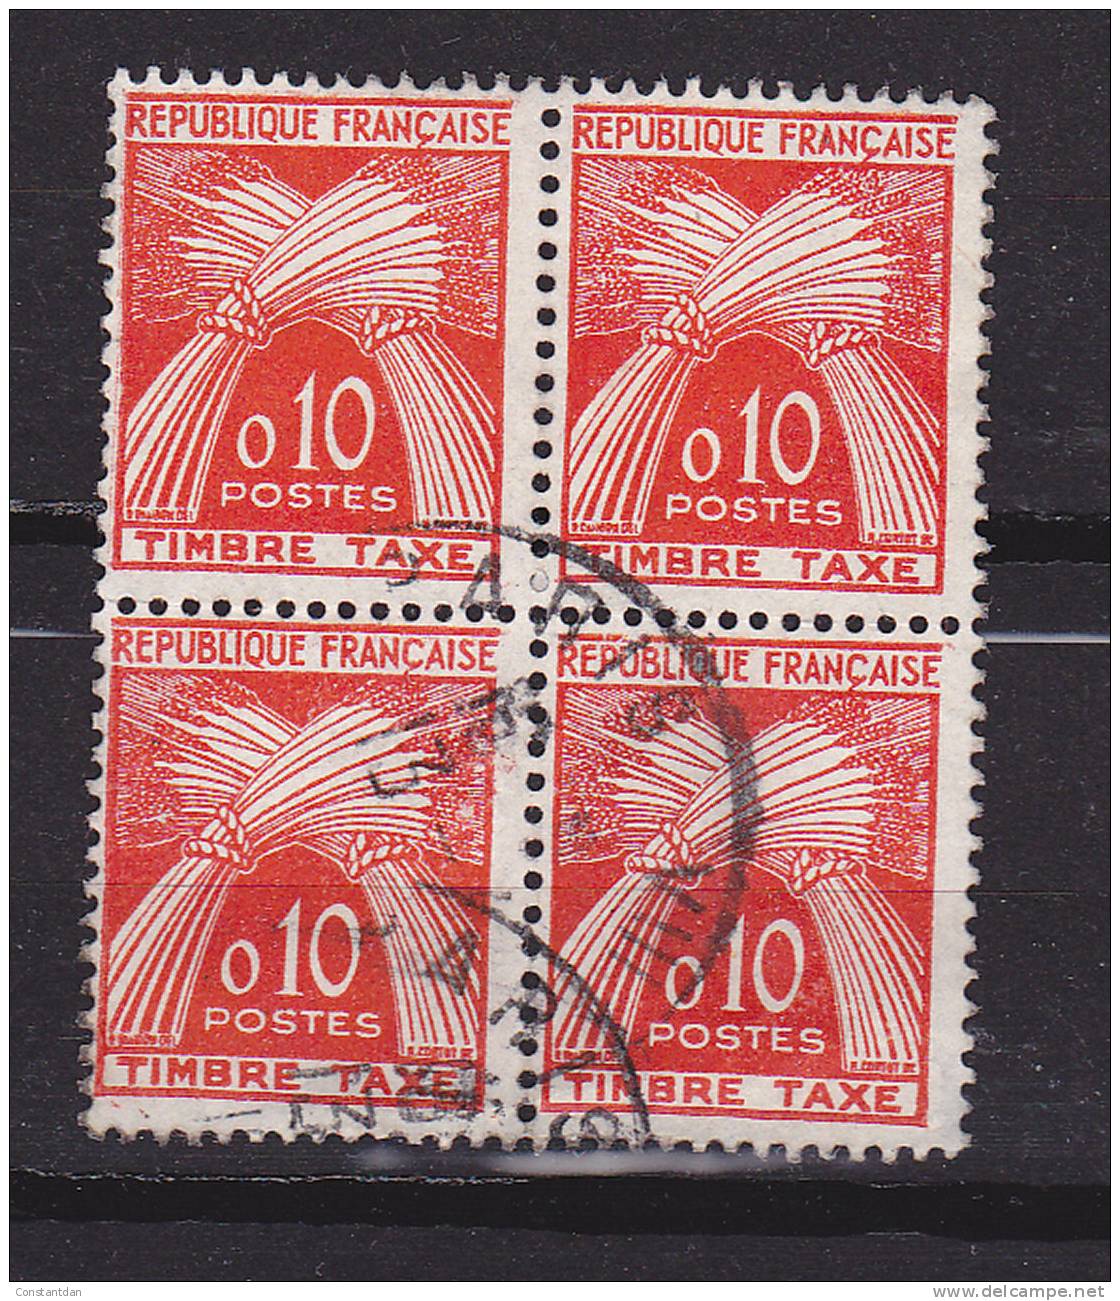 N° 91 0.10 TIMBRE TAXE TYPE GERBE LEGENDE REPUBLIQUE FRANCAISE  BLOC DE 4 OBL - 1960-.... Used